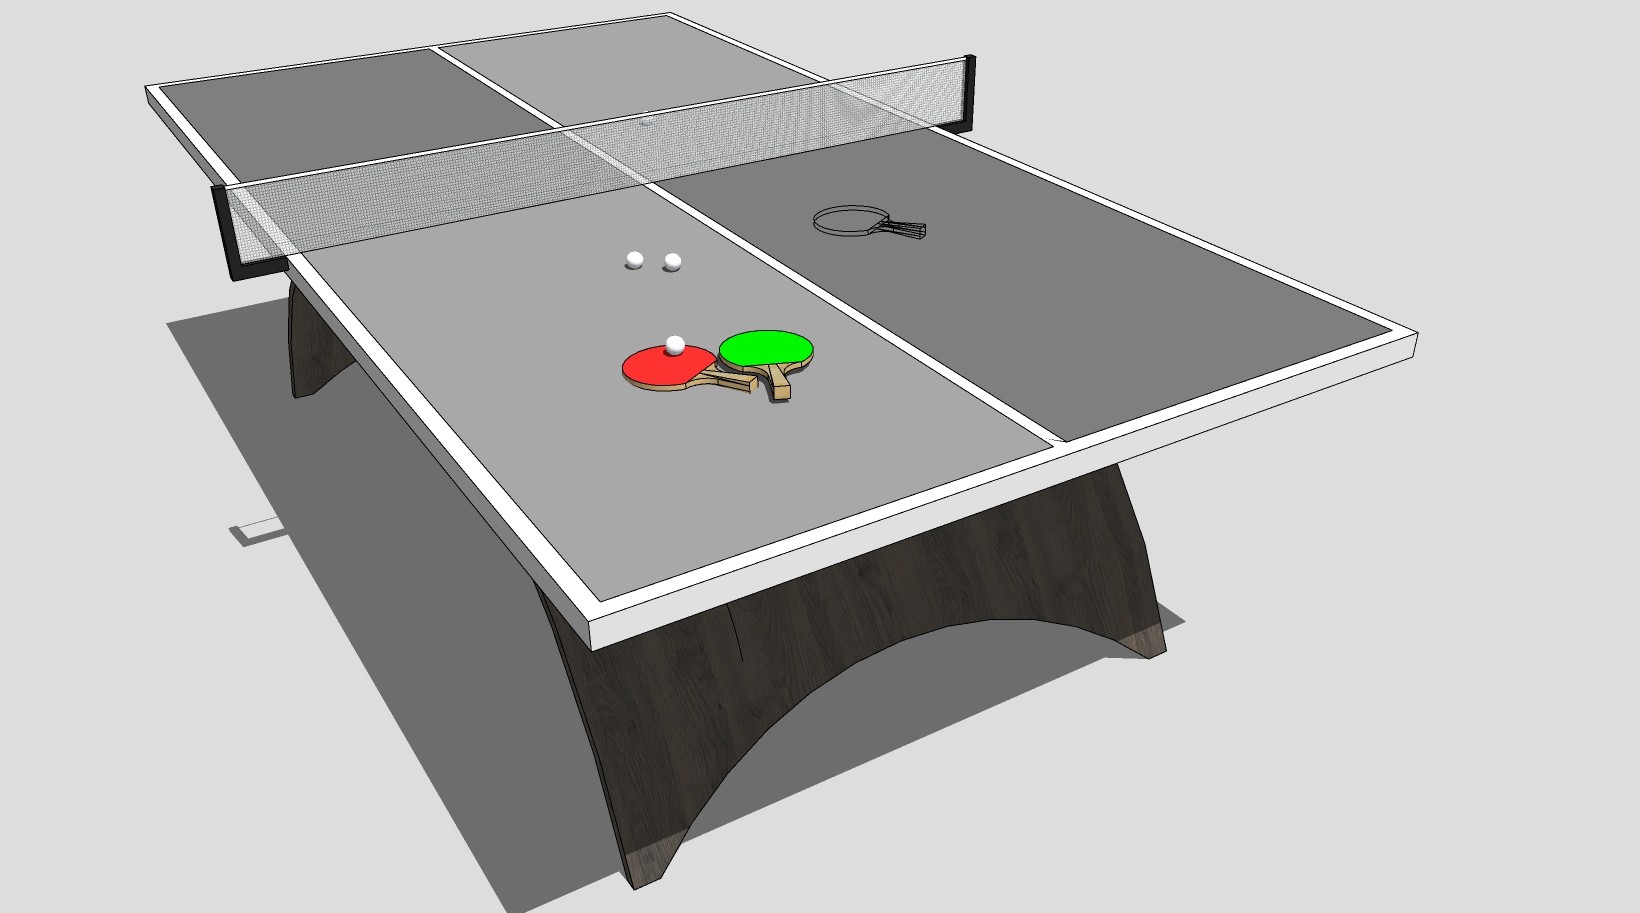 乒乓球桌 案子体育运动健身器材 su草图模型下载